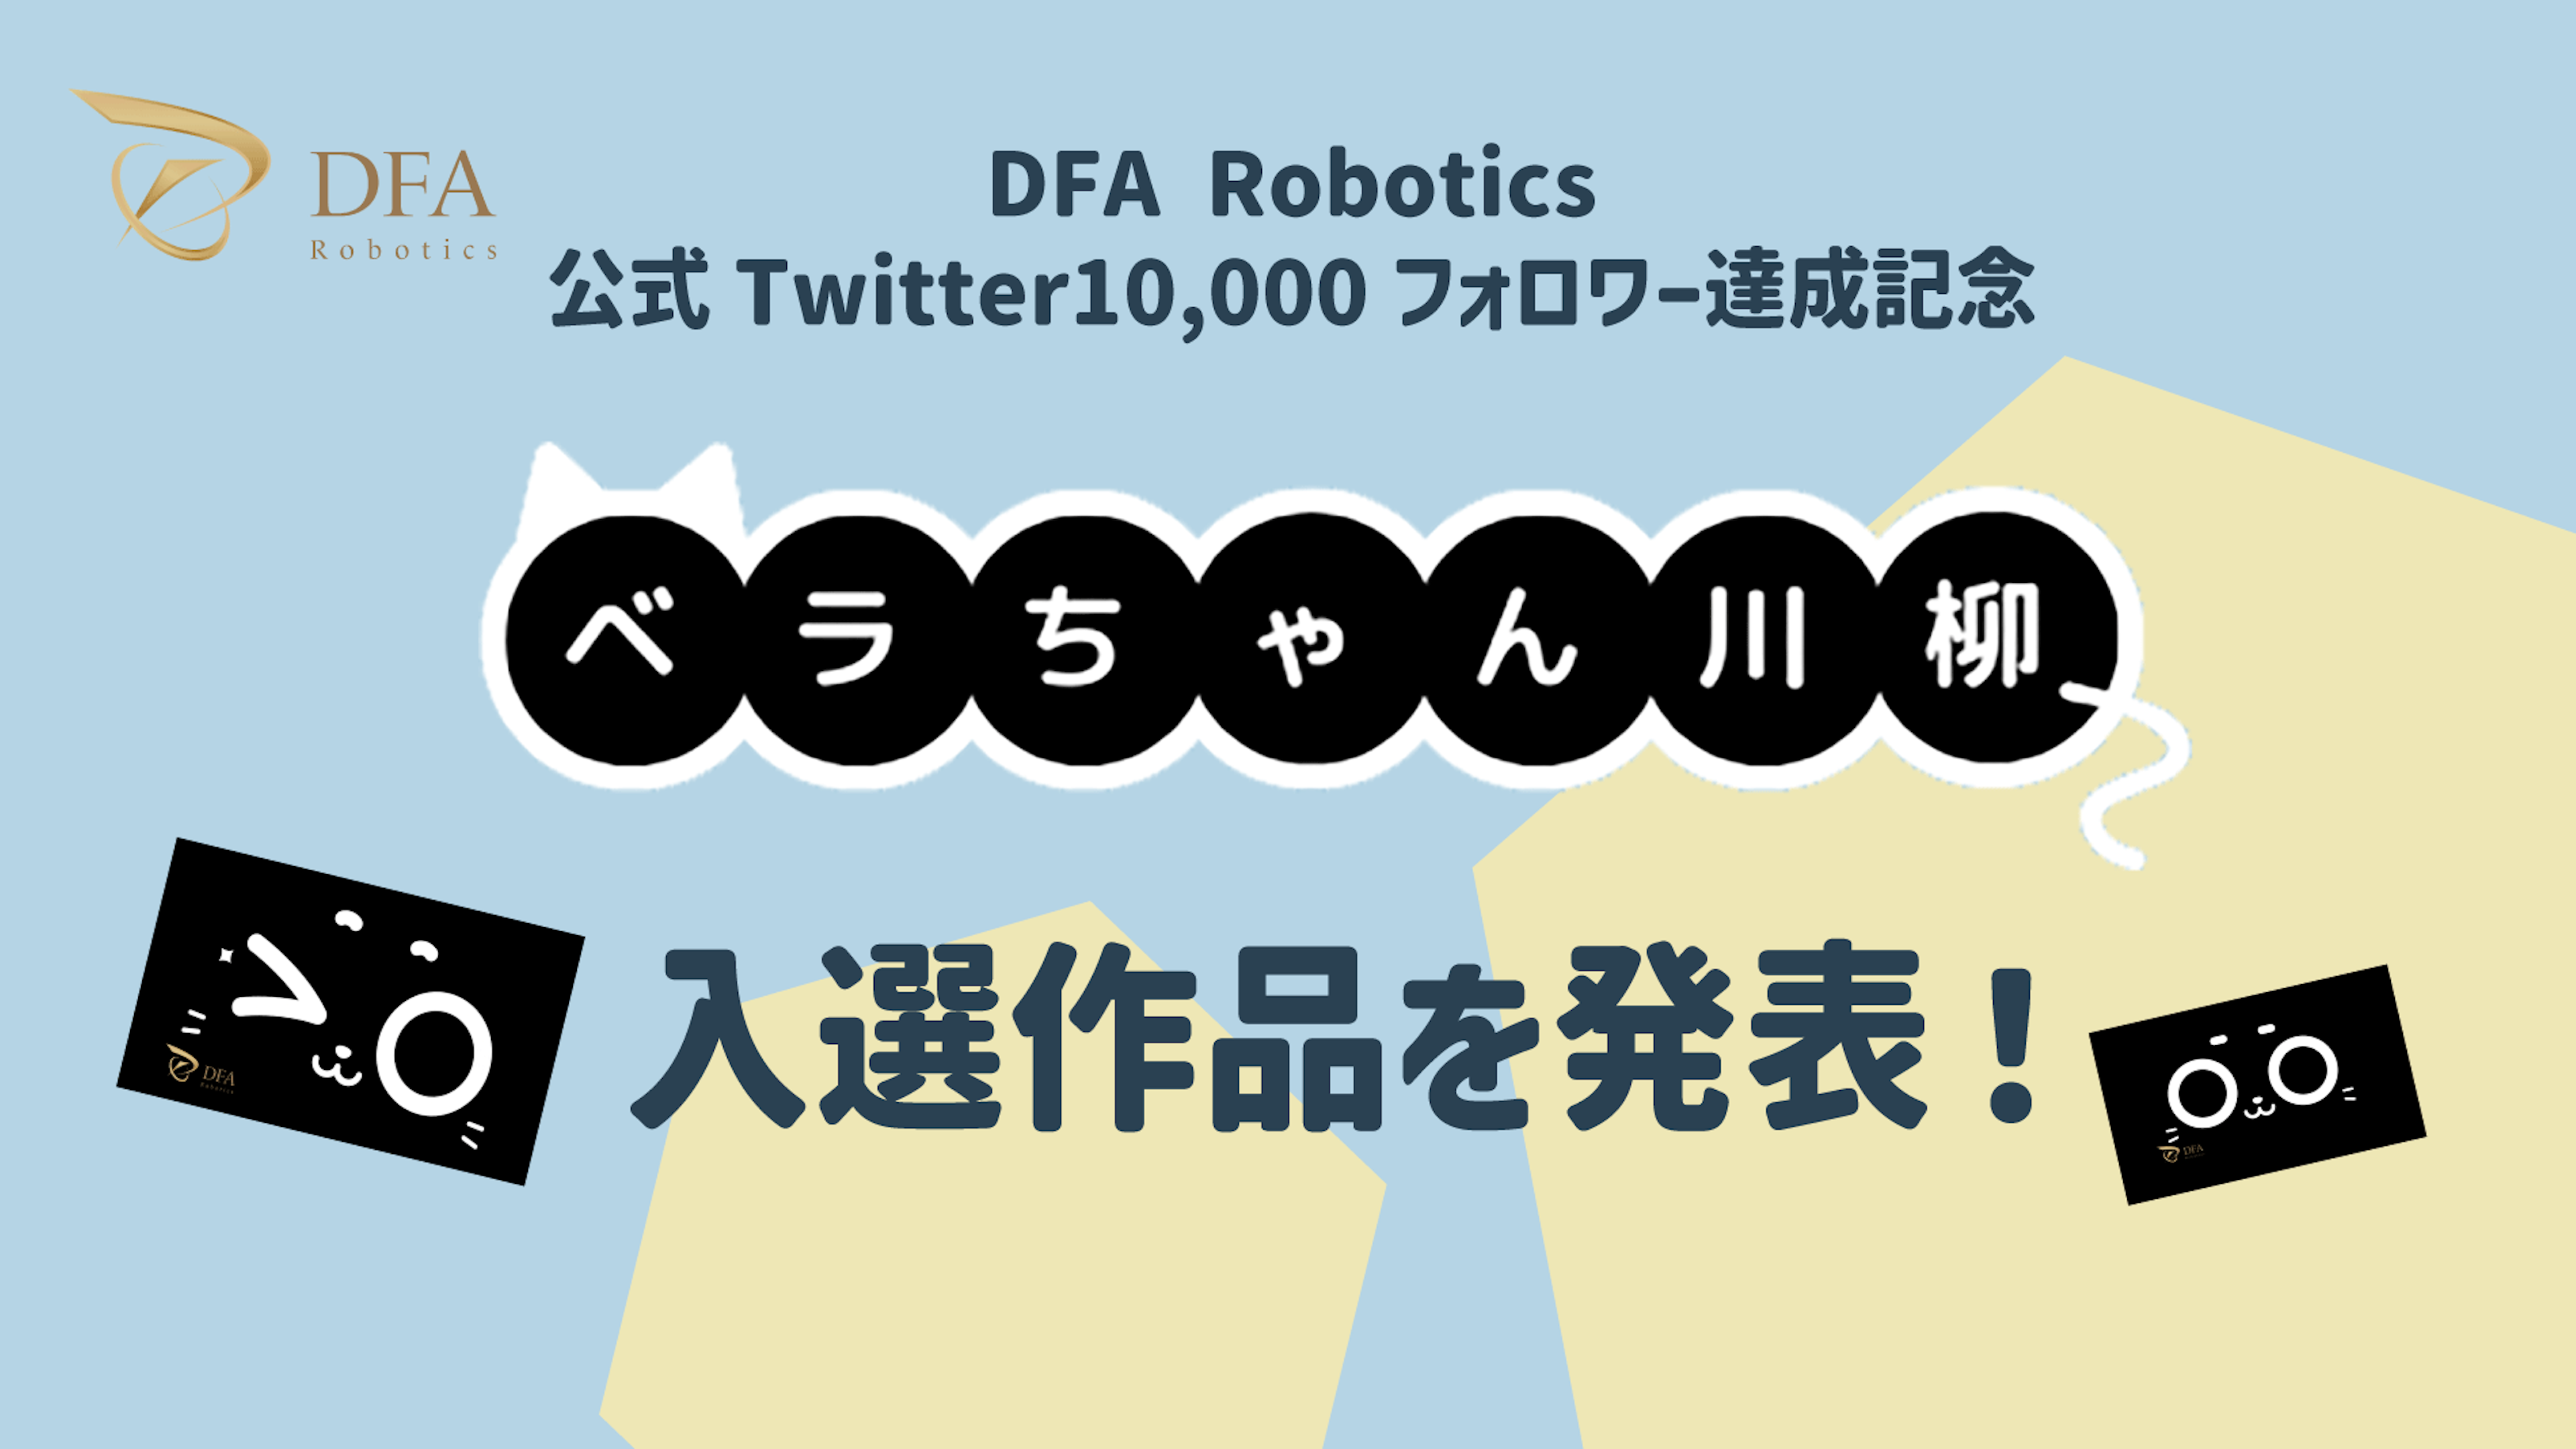 DFA Robotics主催「第1回ベラちゃん川柳」入選作品の発表

〜「一緒に働いてくれてありがとう」配膳ロボットと働くスタッフの声など12作品が入選〜